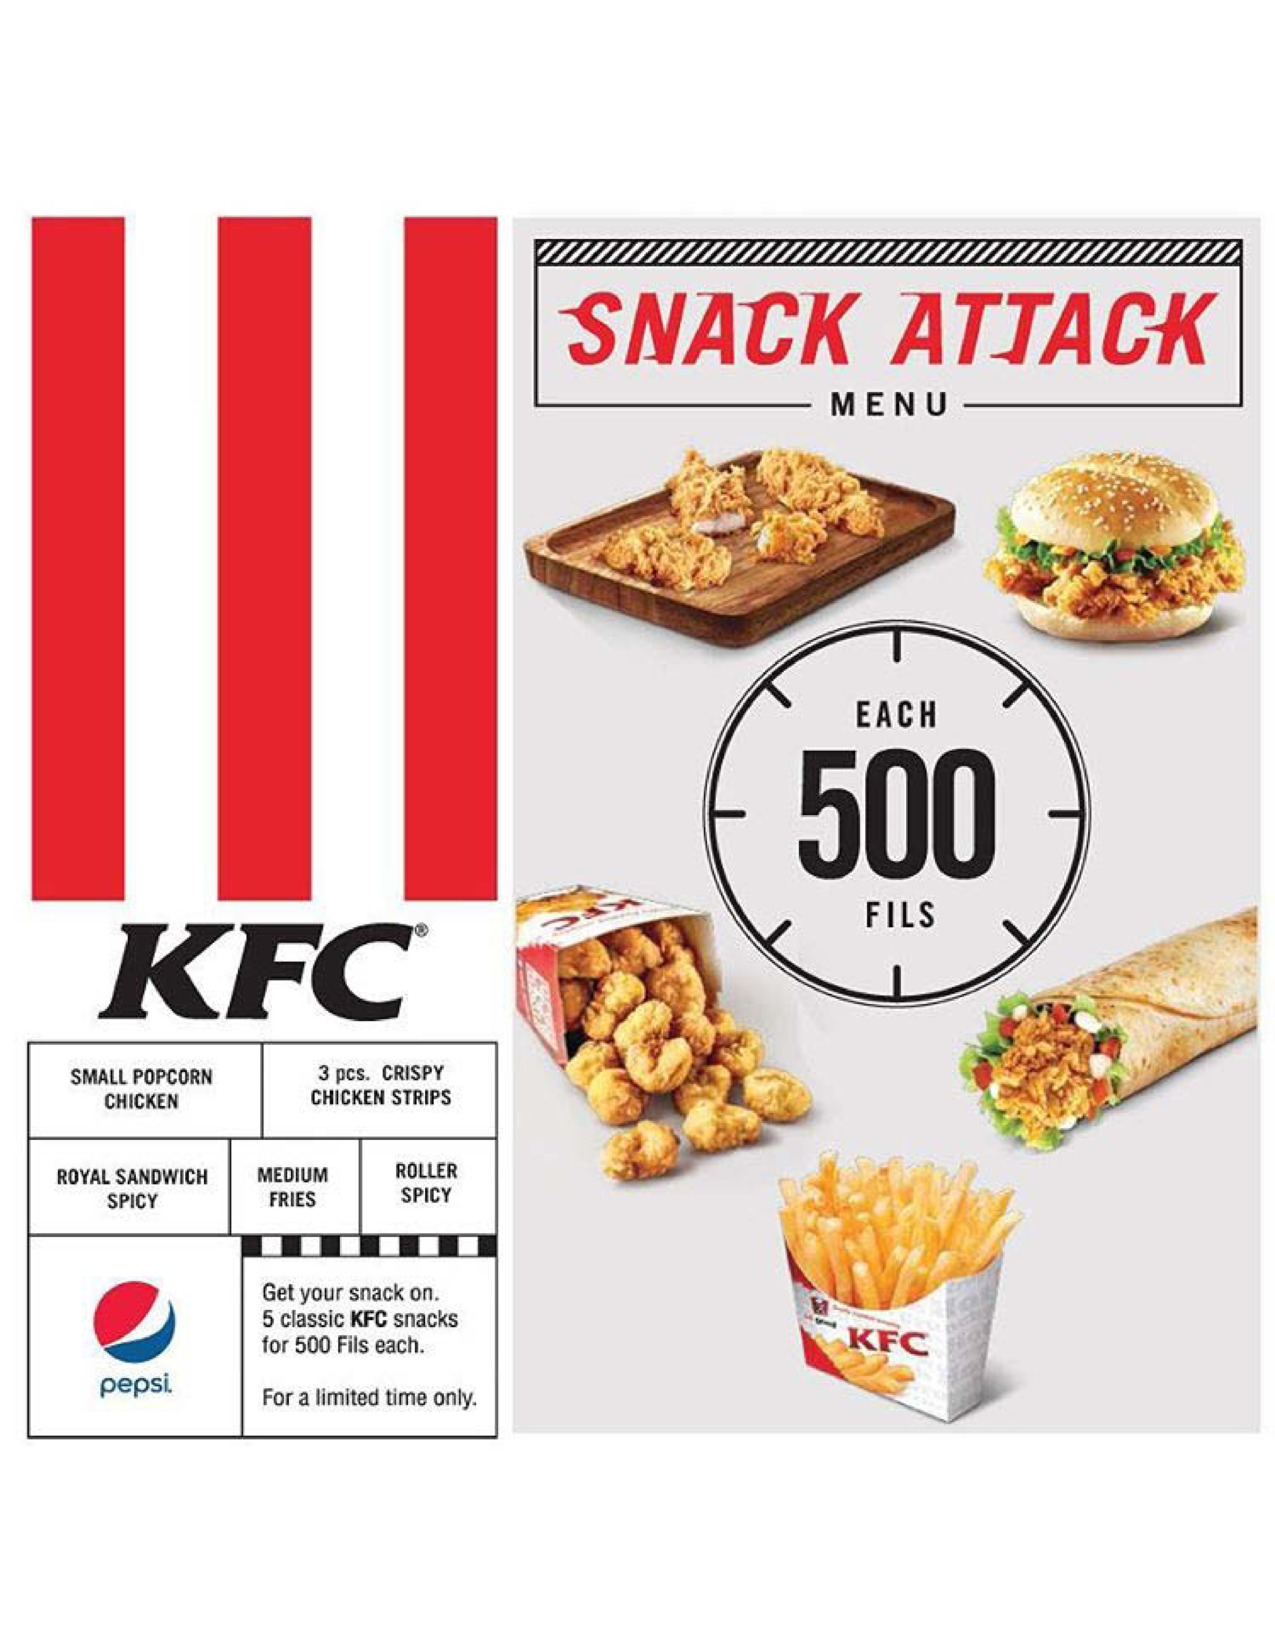 snack-attack-menu in kuwait